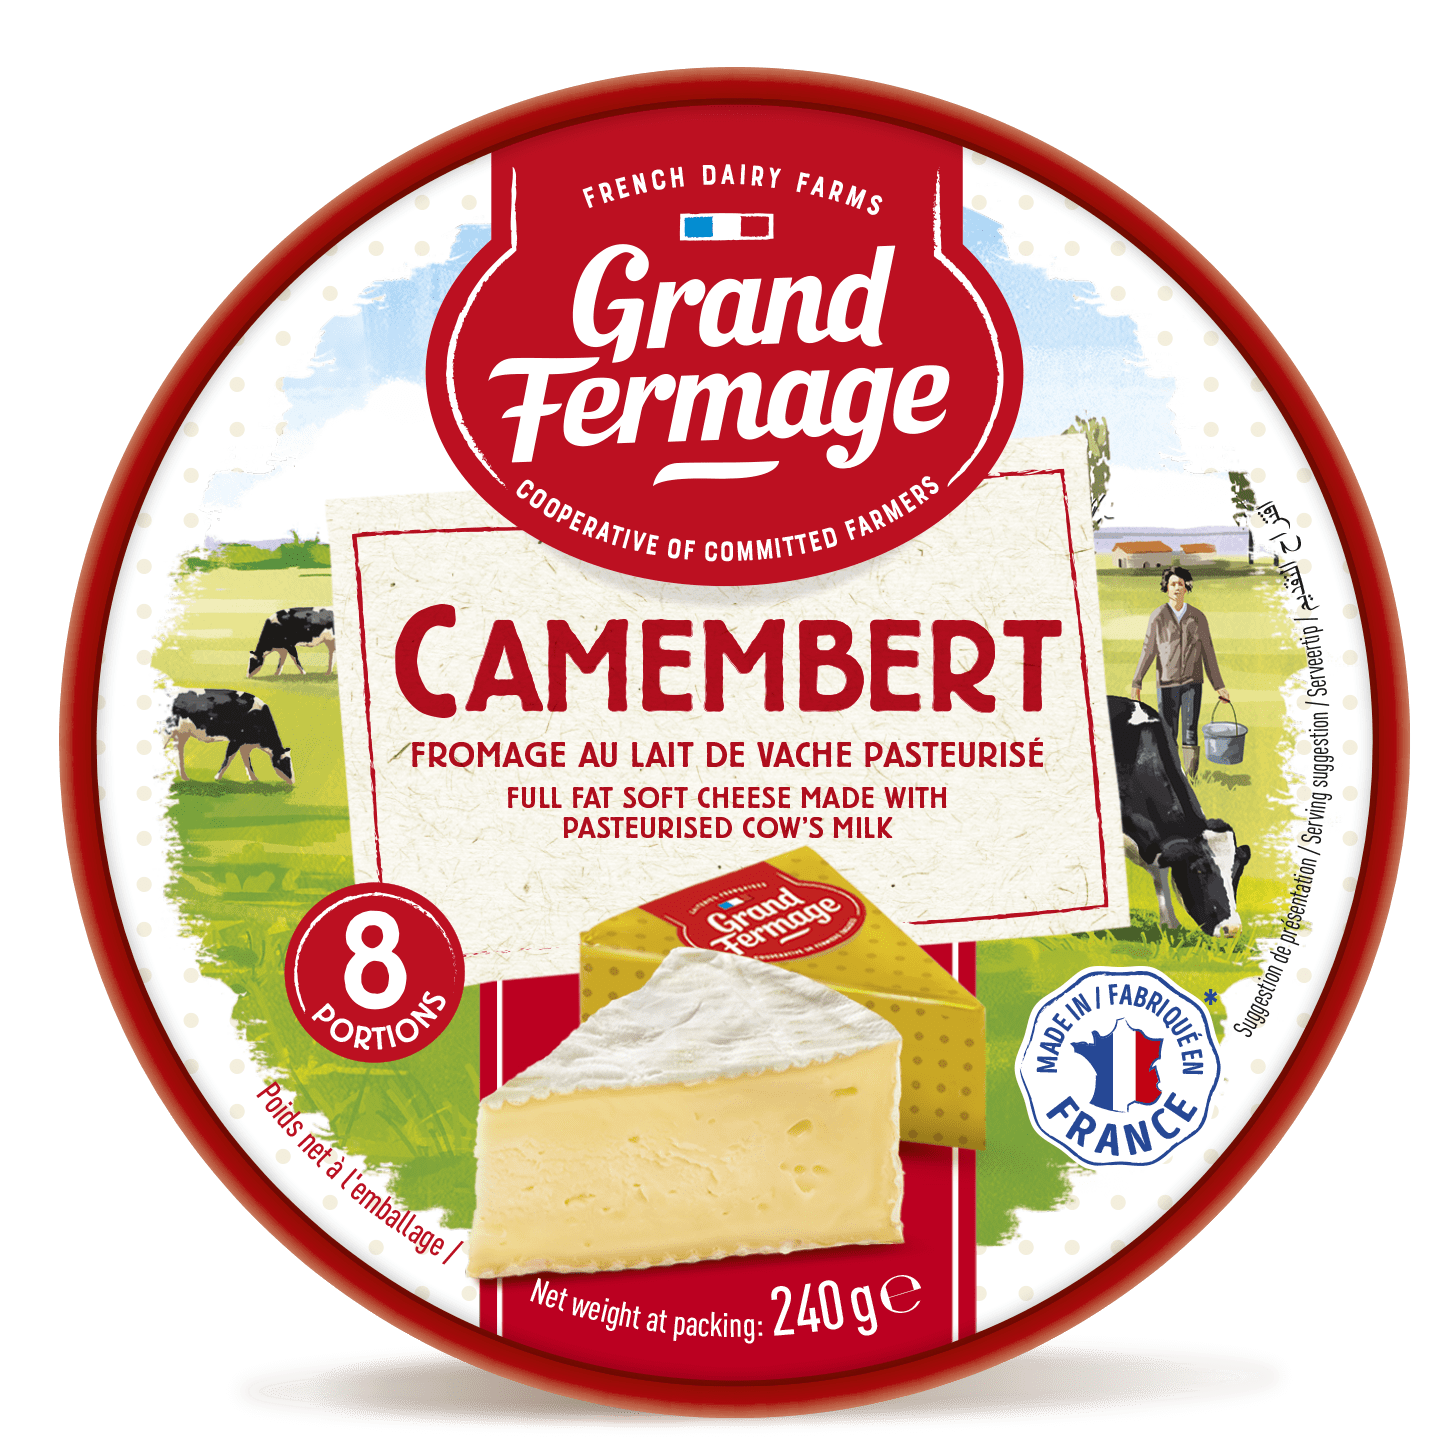 CHEESE (Camembert taste)